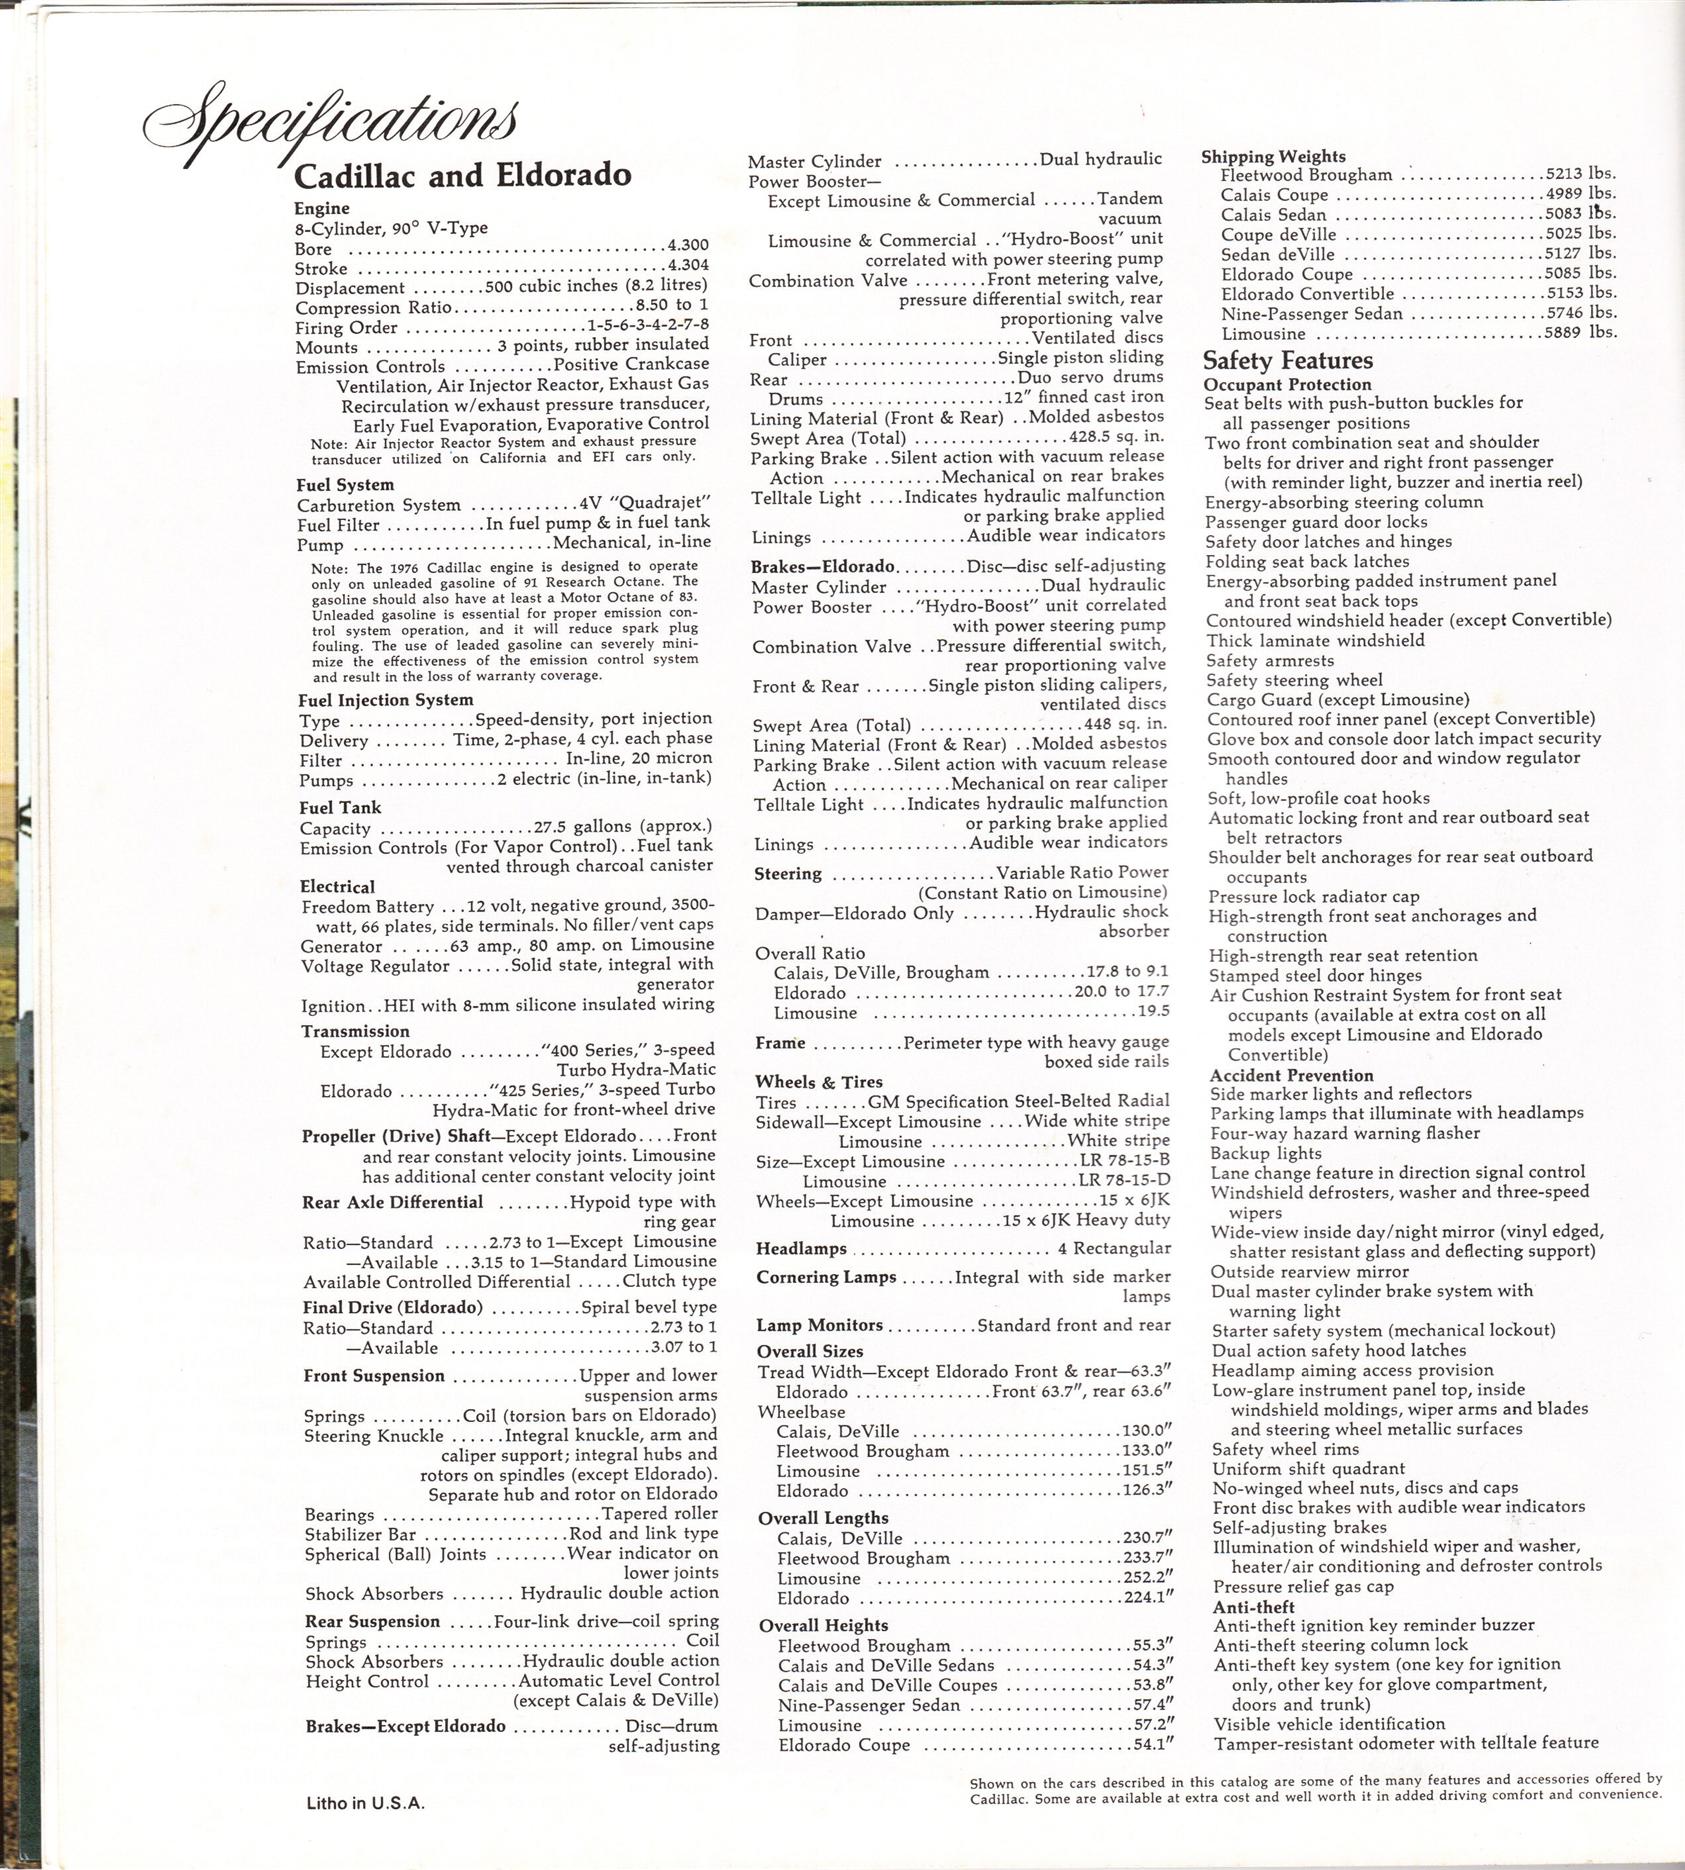 1976 Cadillac Brochure Page 5